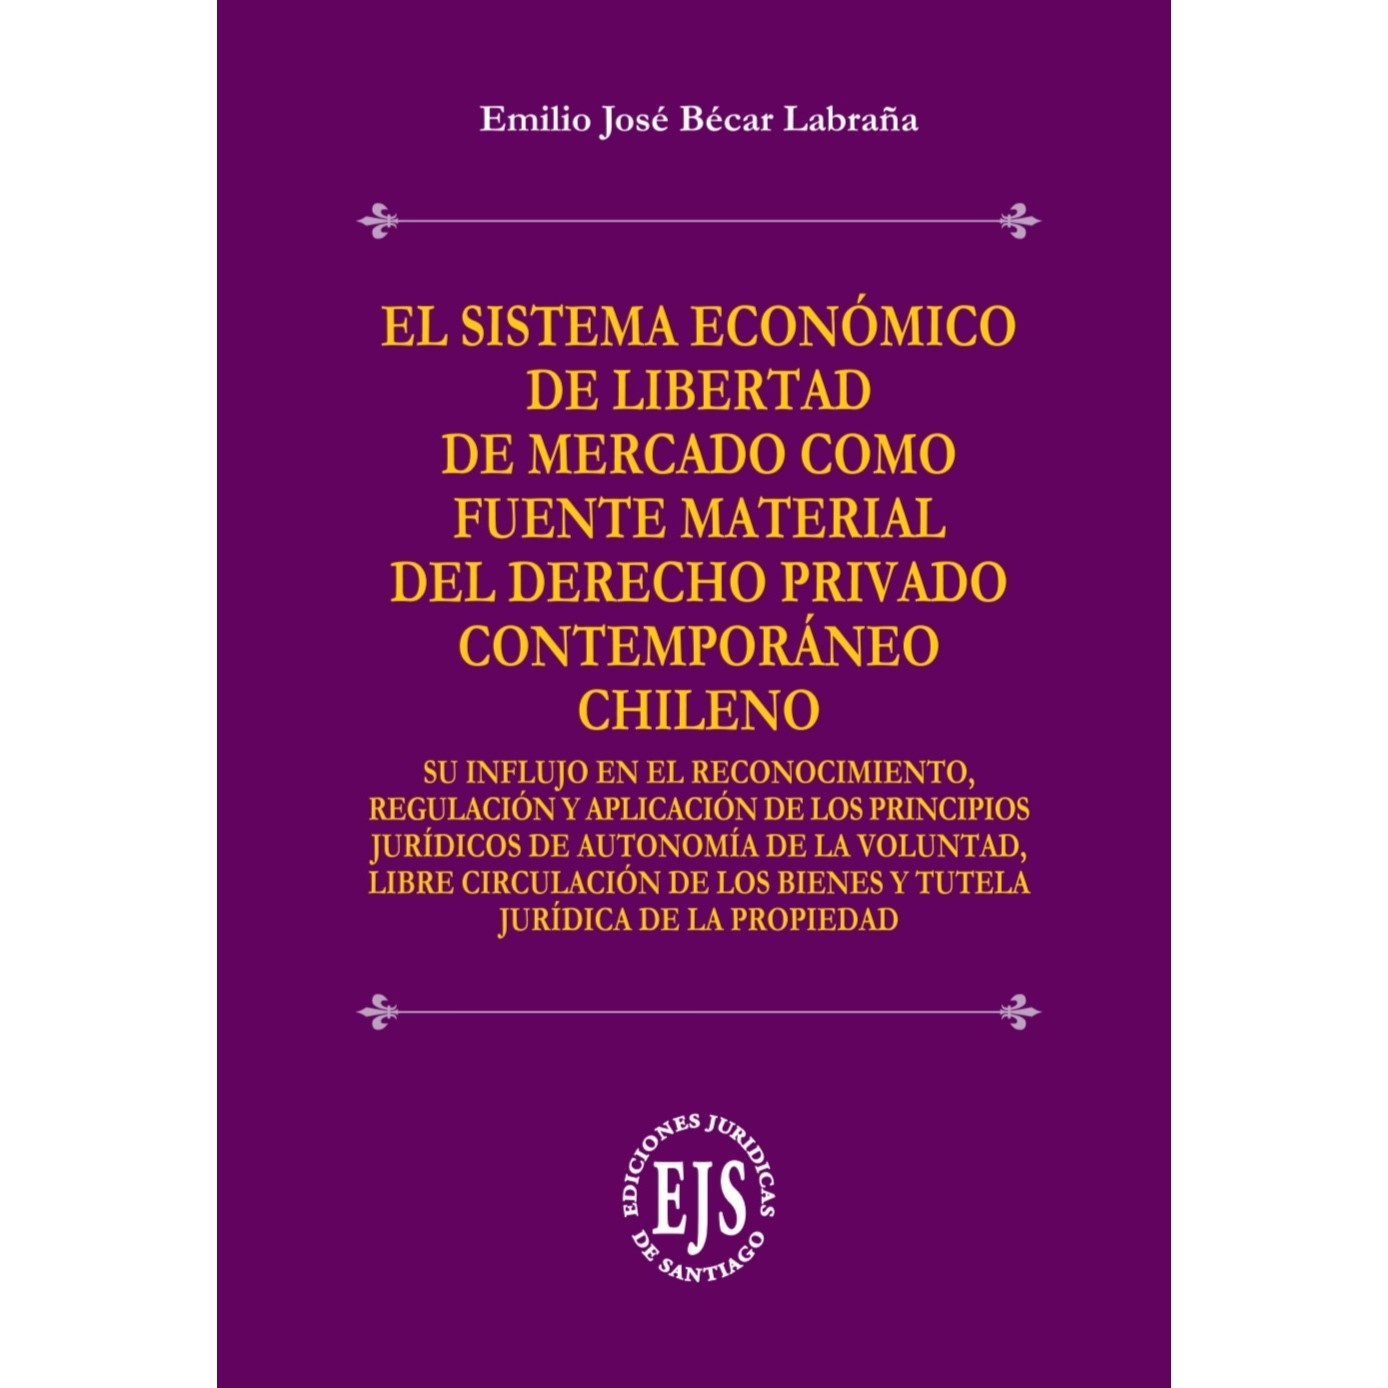 El Sistema Económico de Libertad de Mercado como Fuente Material del Derecho Privado Contemporáneo Chileno